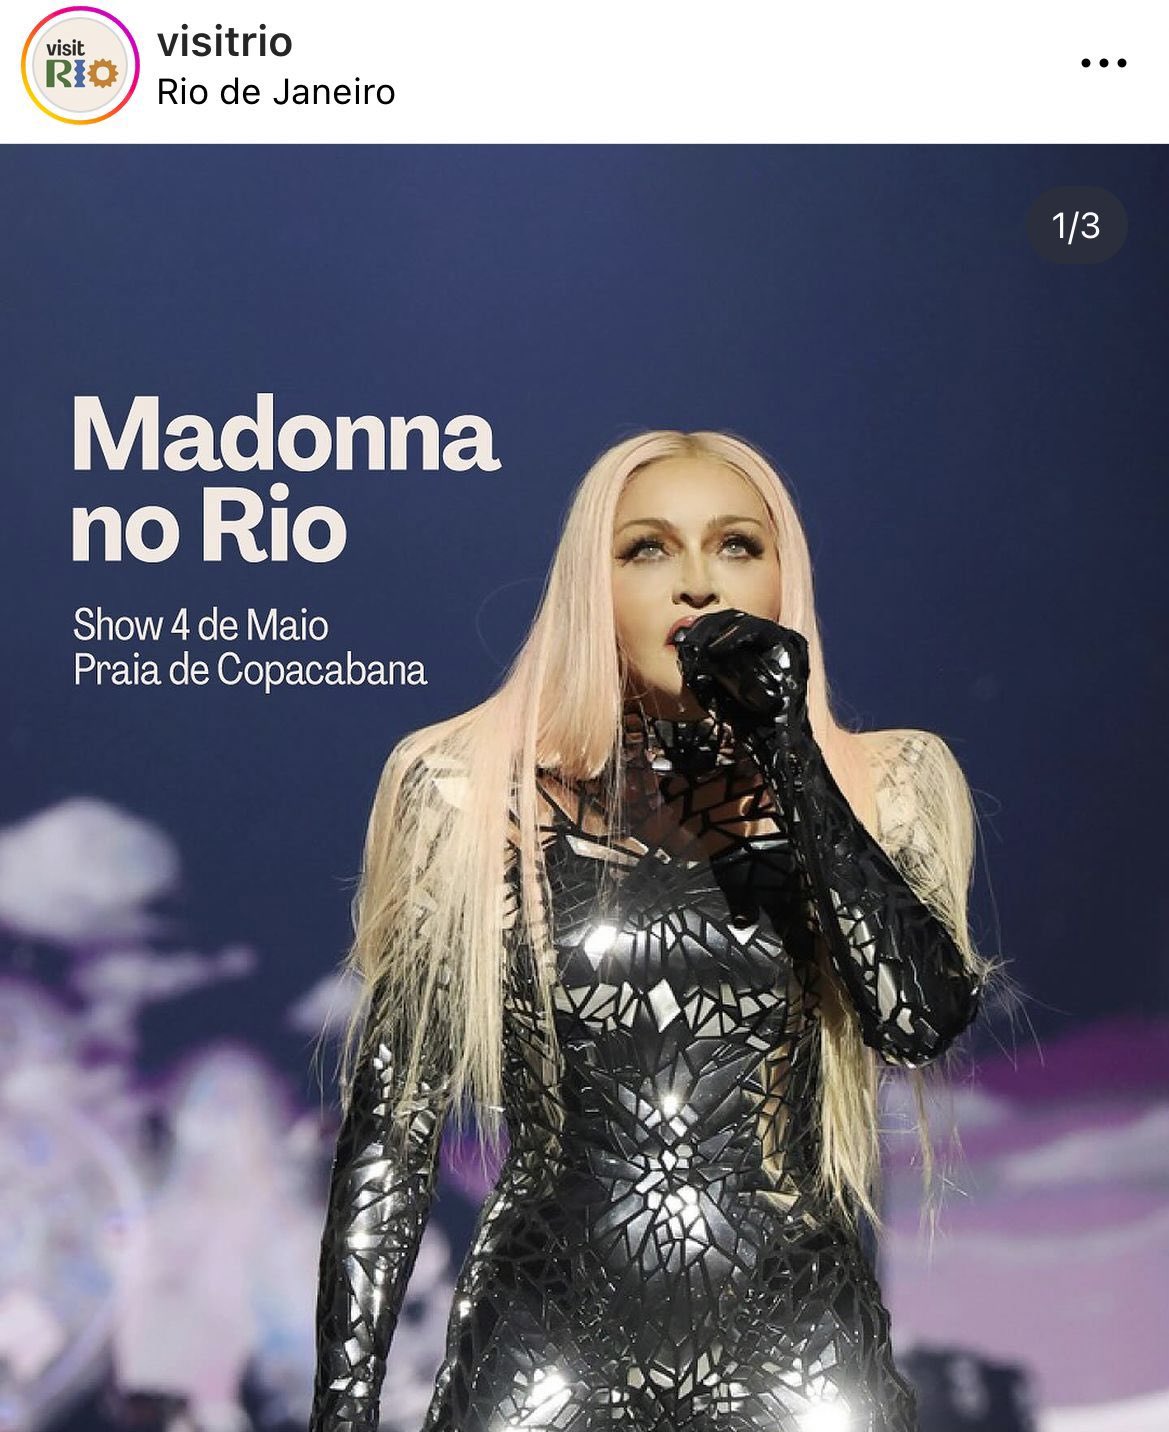 Madonna Brasil on X: "A QUALQUER MOMENTO! VisitRio também faz post sobre  show de Madonna na Praia de Copacabana: “No dia 4 de maio, Madonna faz o  último show da turnê The